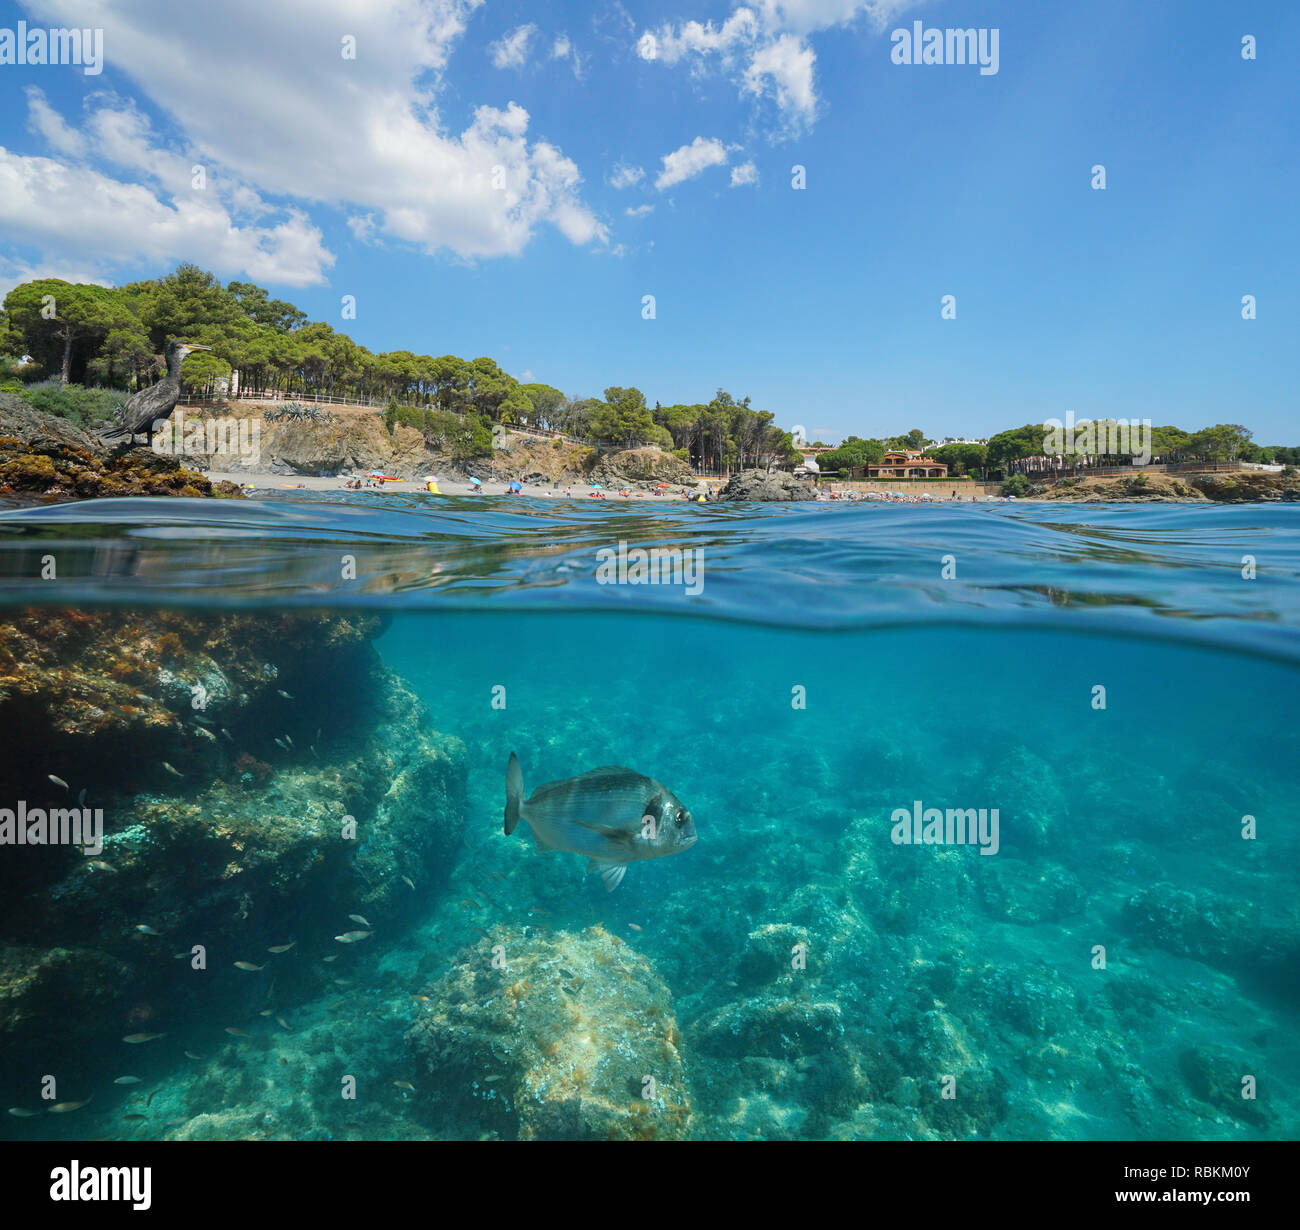 Espagne littoral avec cormoran sur rock et le poisson sous l'eau, Llanca sur la Costa Brava, split voir la moitié de la sur et sous l'eau, mer Méditerranée Banque D'Images